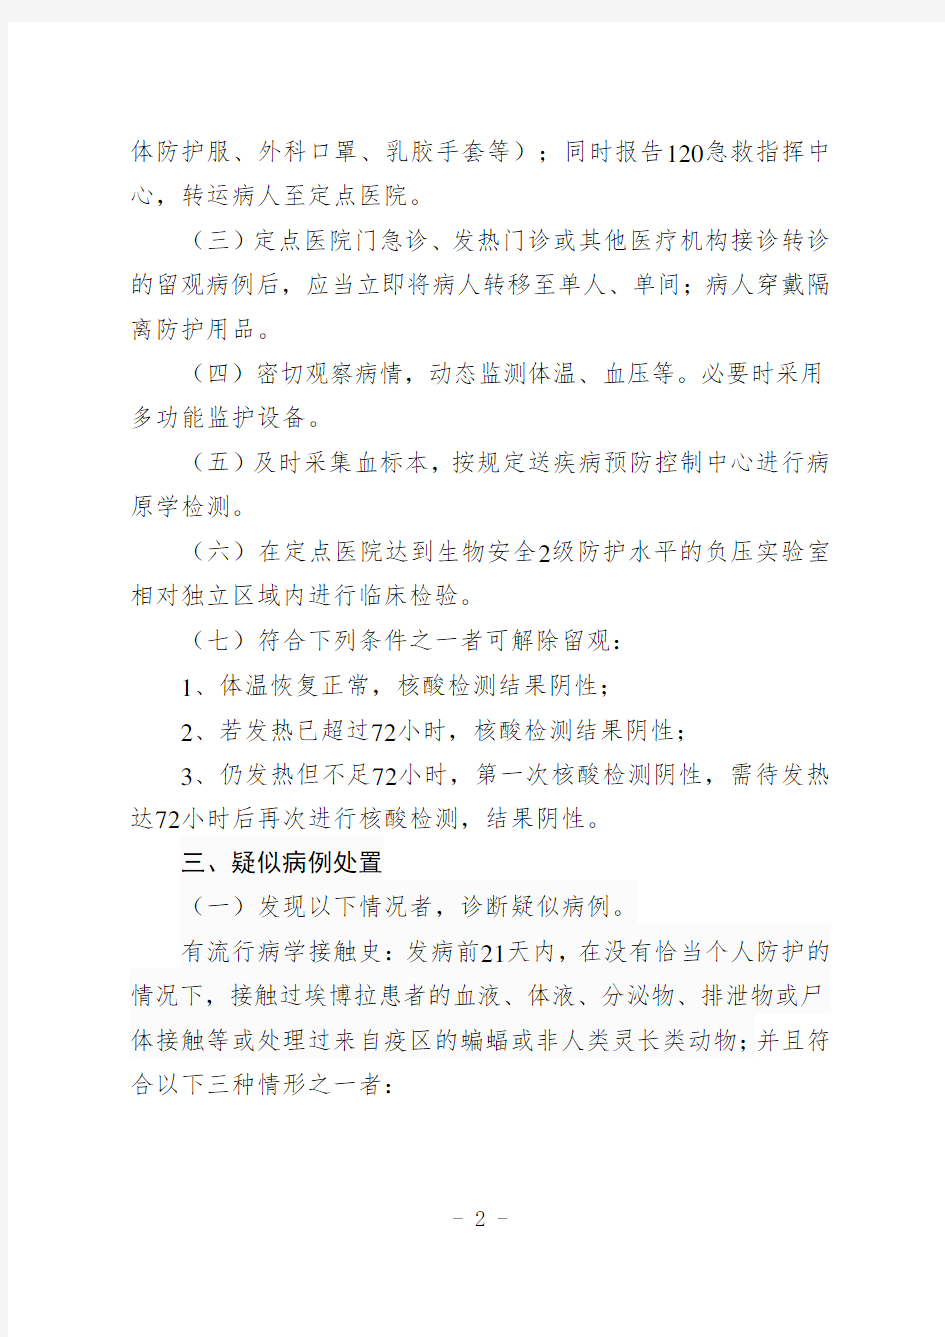 1.广东省埃博拉出血热相关病例处置方案(2014年第一版)